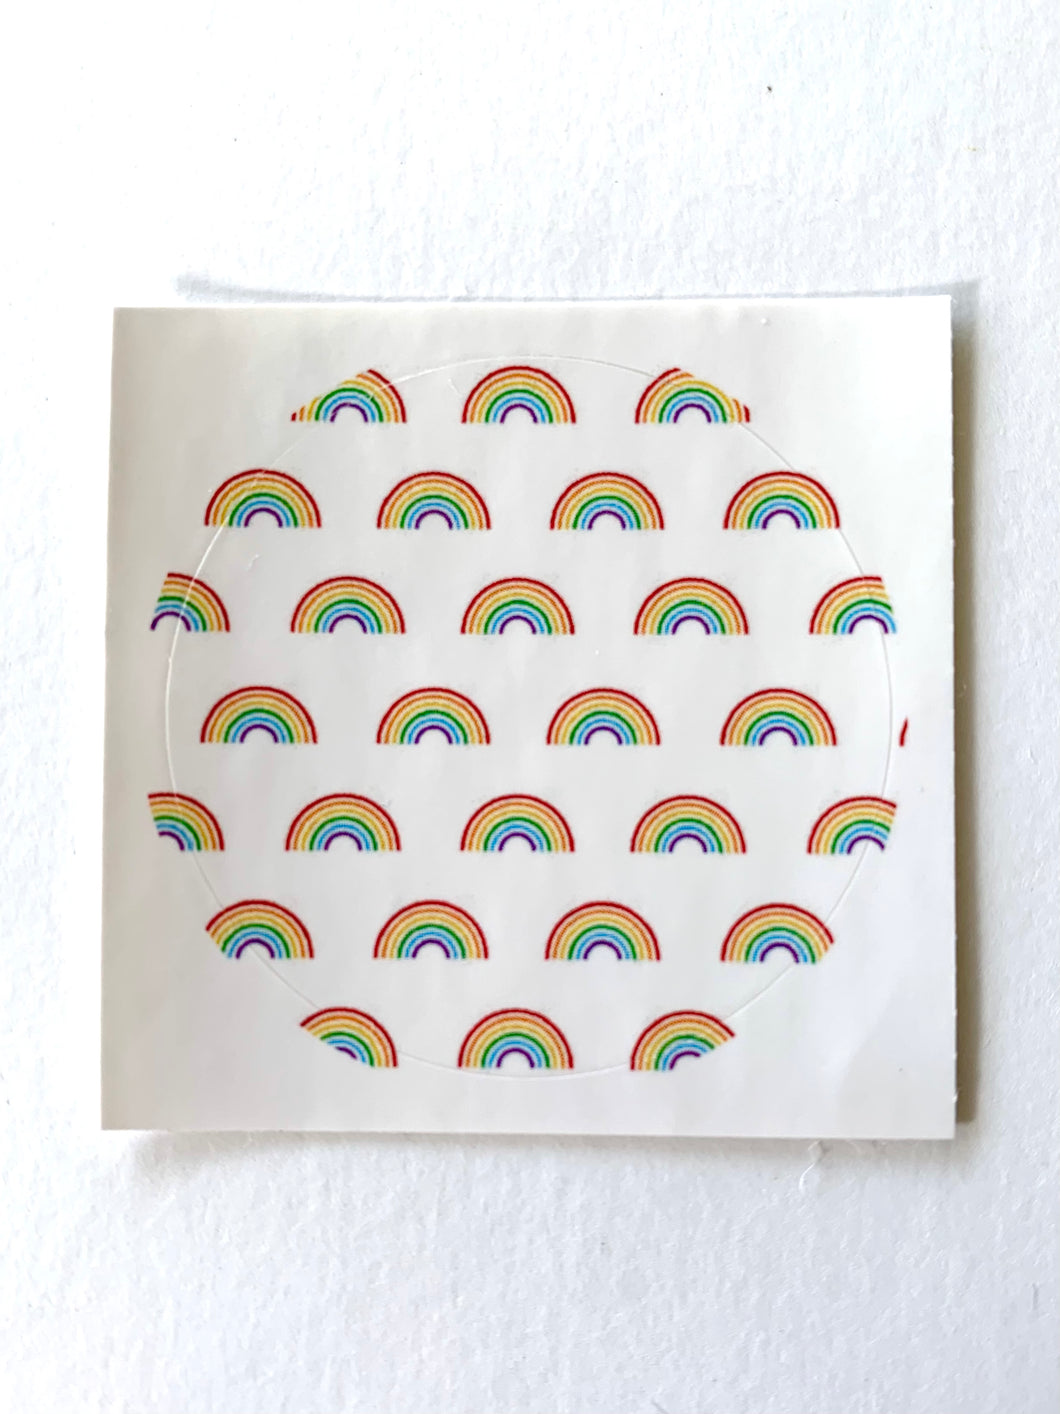 Tiny Rainbows Sticker Sheet - (4) 1.5